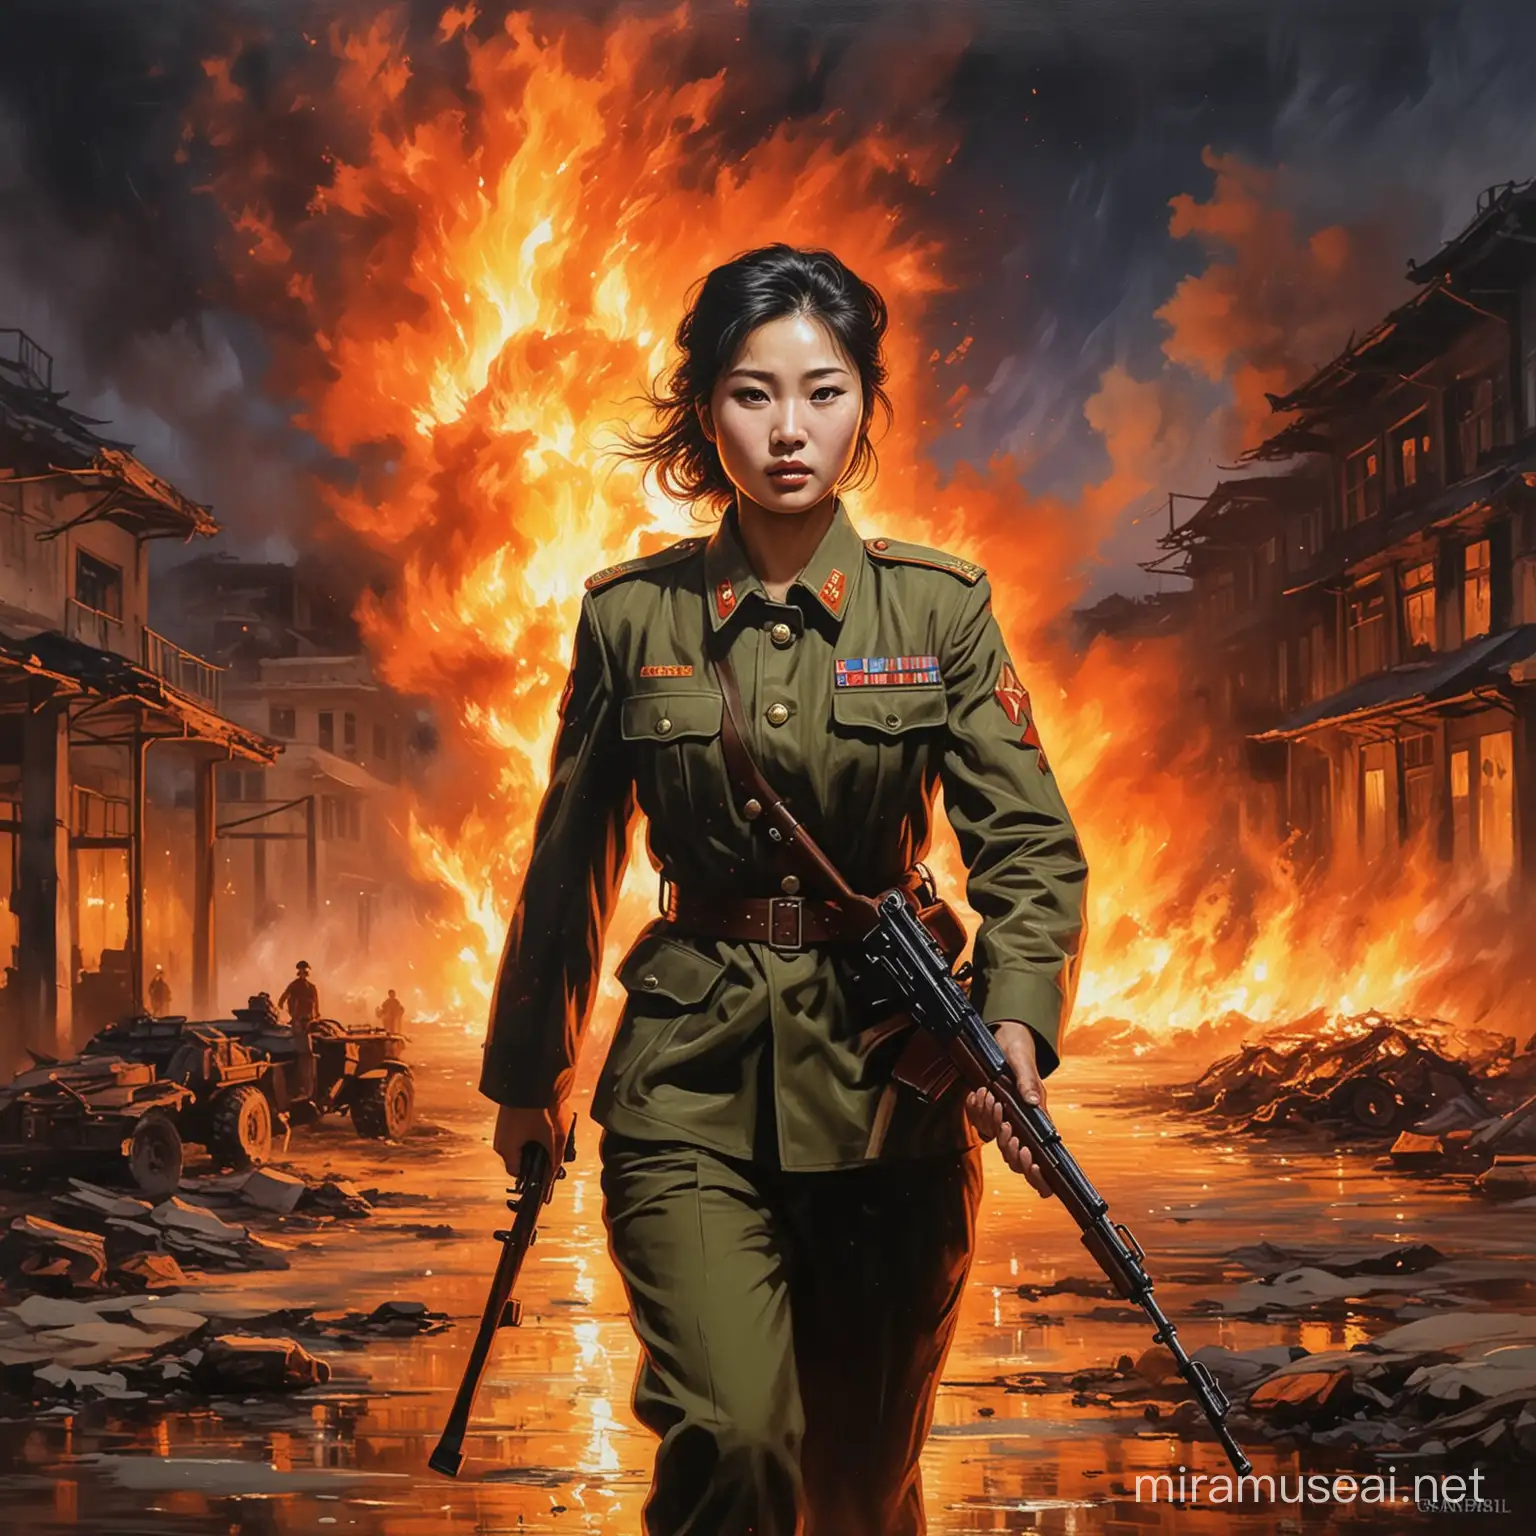 Impressionist North Korean Female Soldier Amidst Urban Inferno